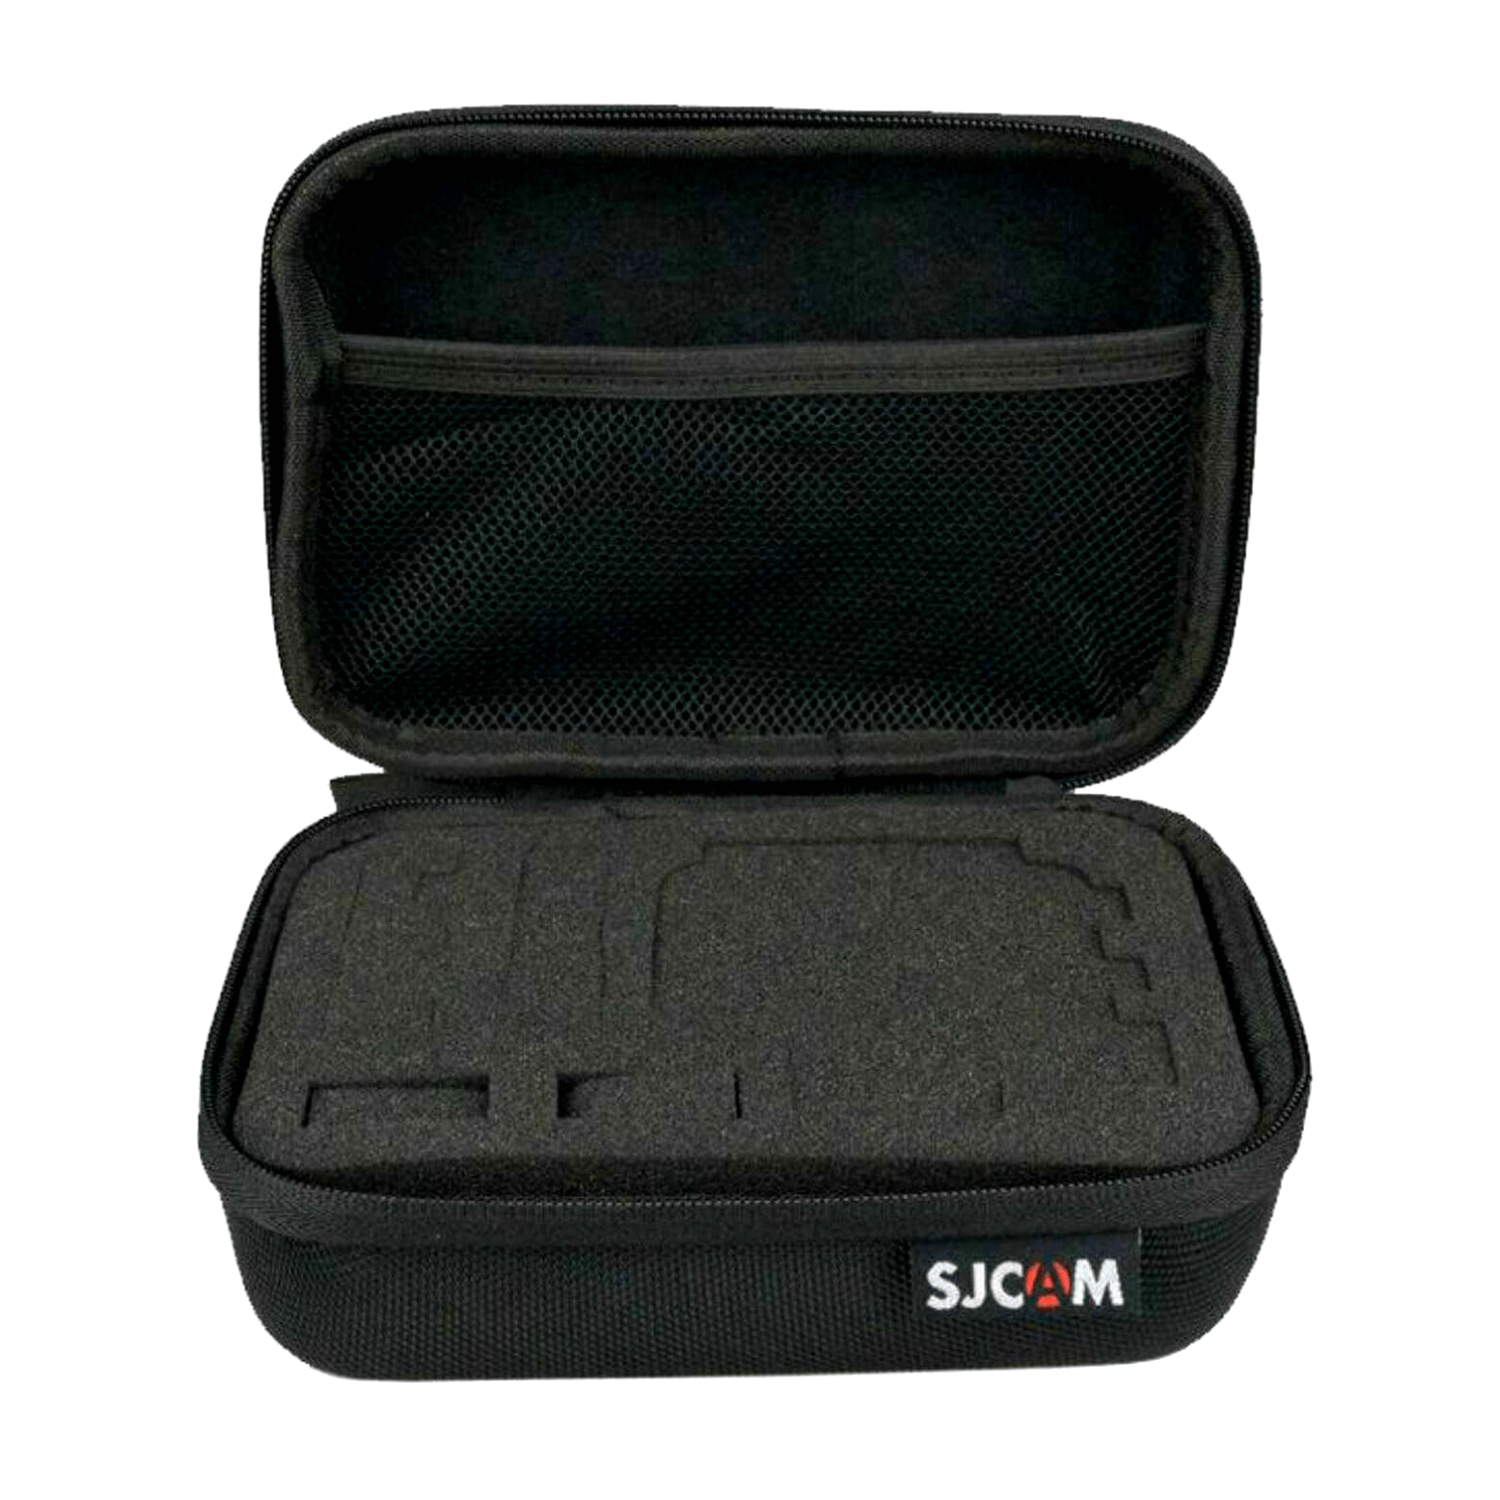 Kit De Accesorios X 50 Gopro Sjcam Action Cam Estuche Imperm